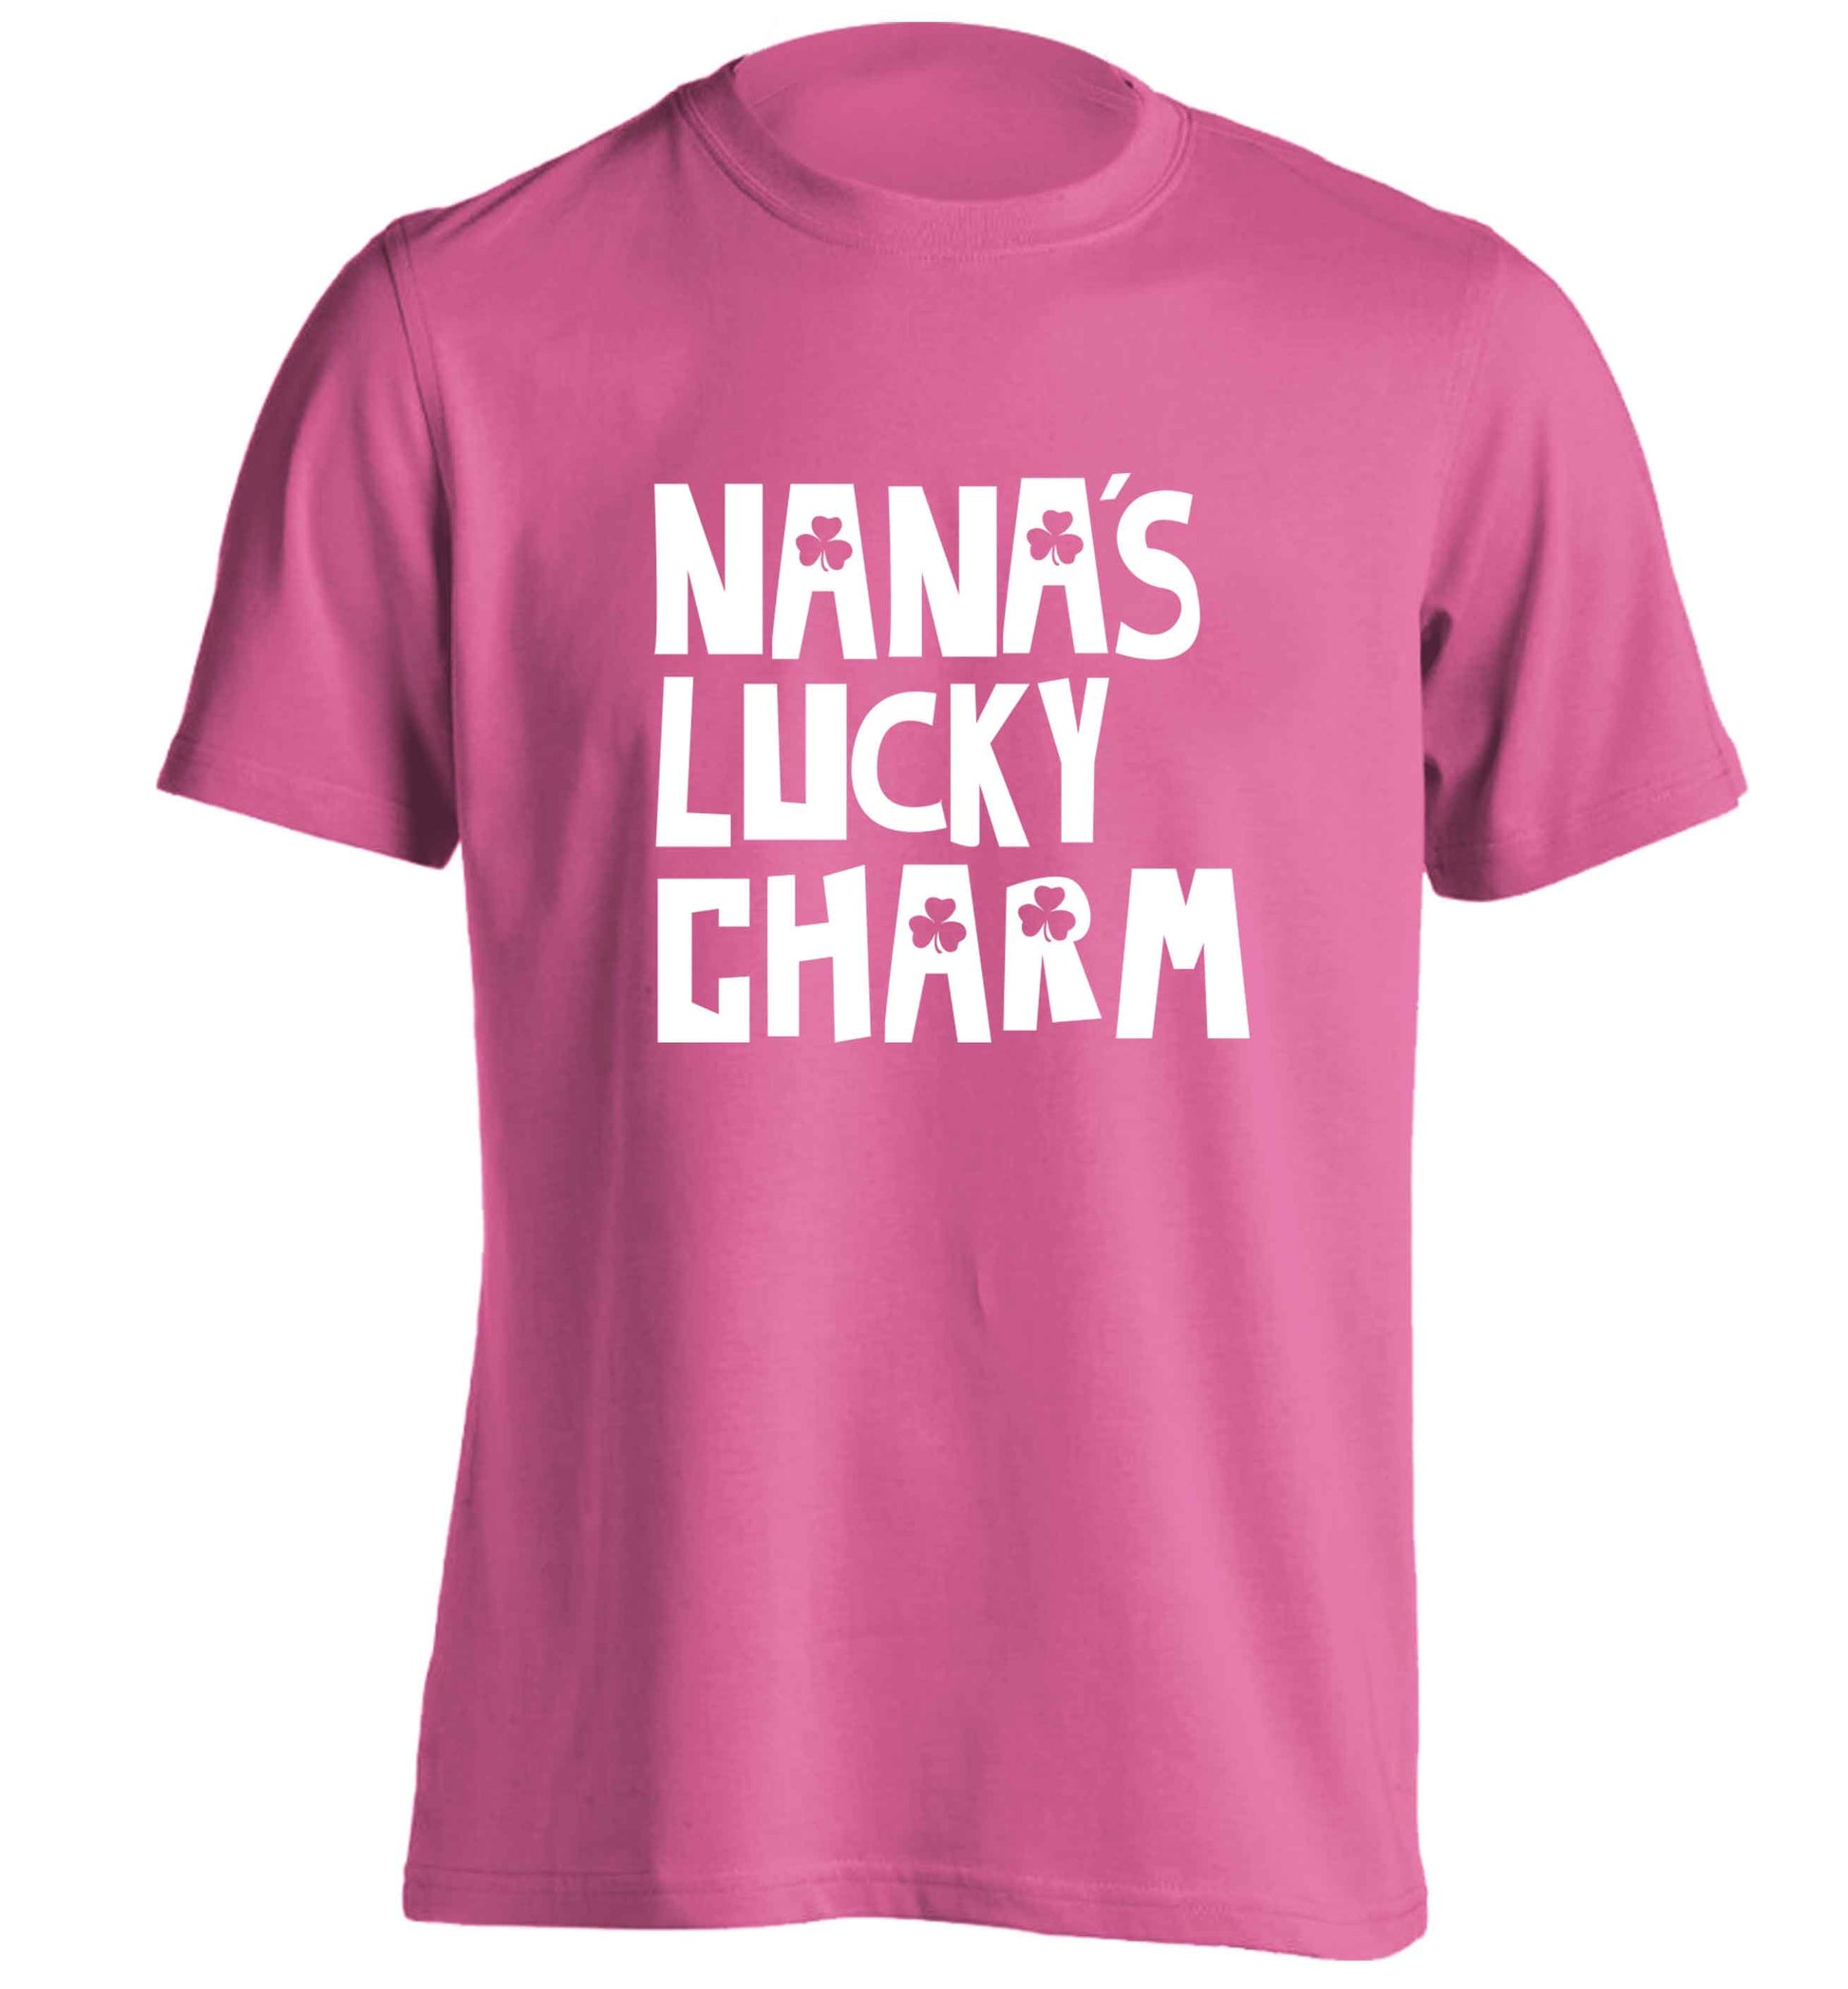 Nana's lucky charm adults unisex pink Tshirt 2XL